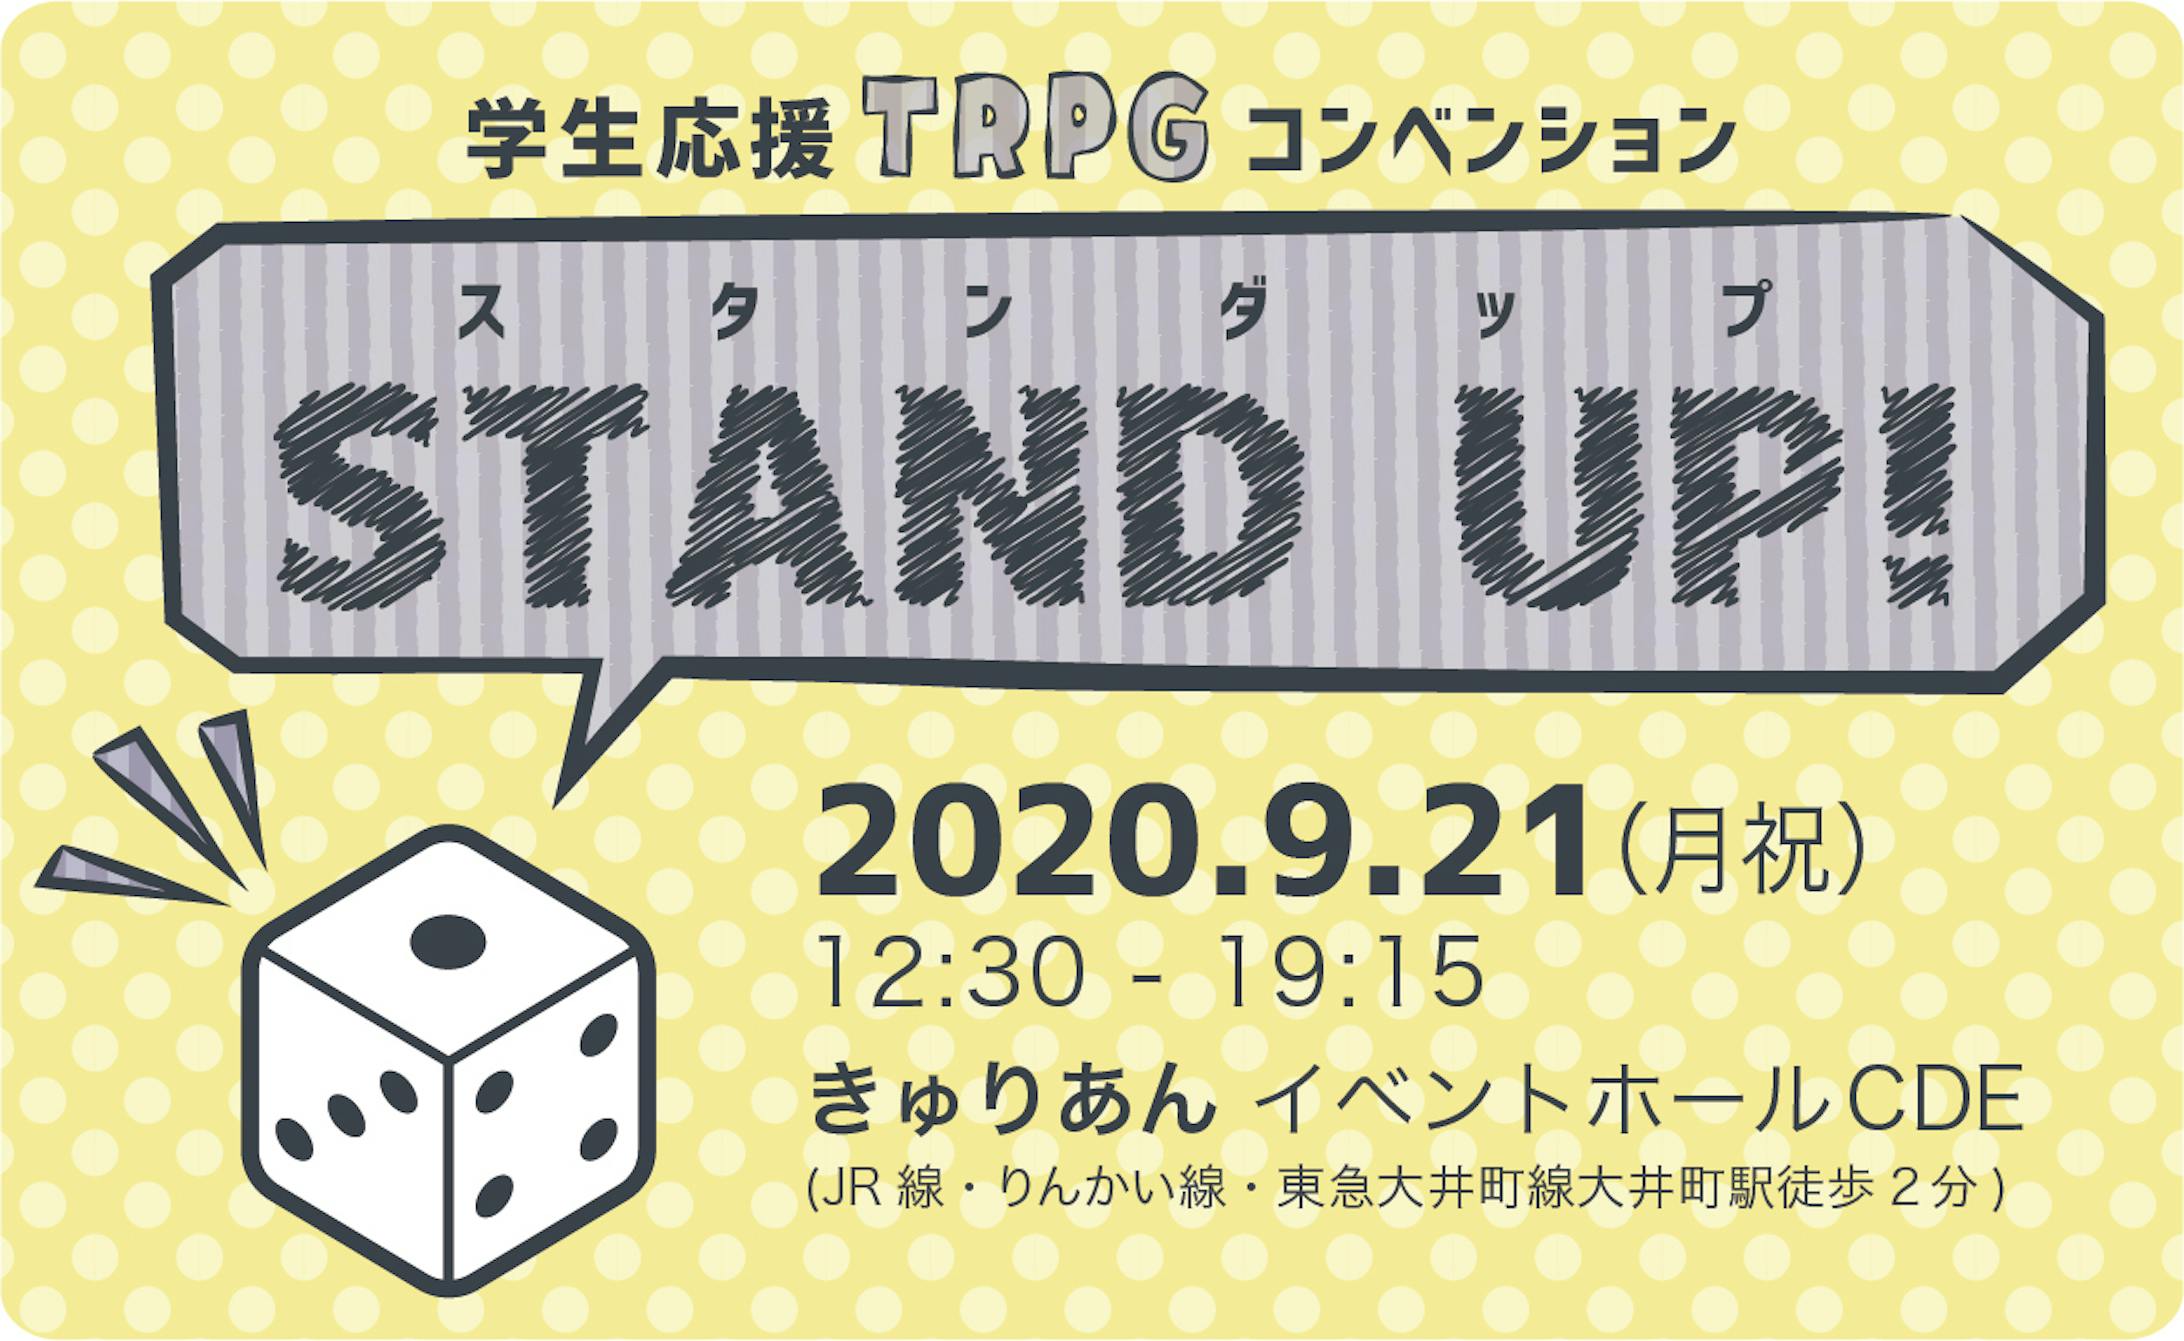 資料デザイン一式「学生応援TRPGコンベンション STAND UP!」-1